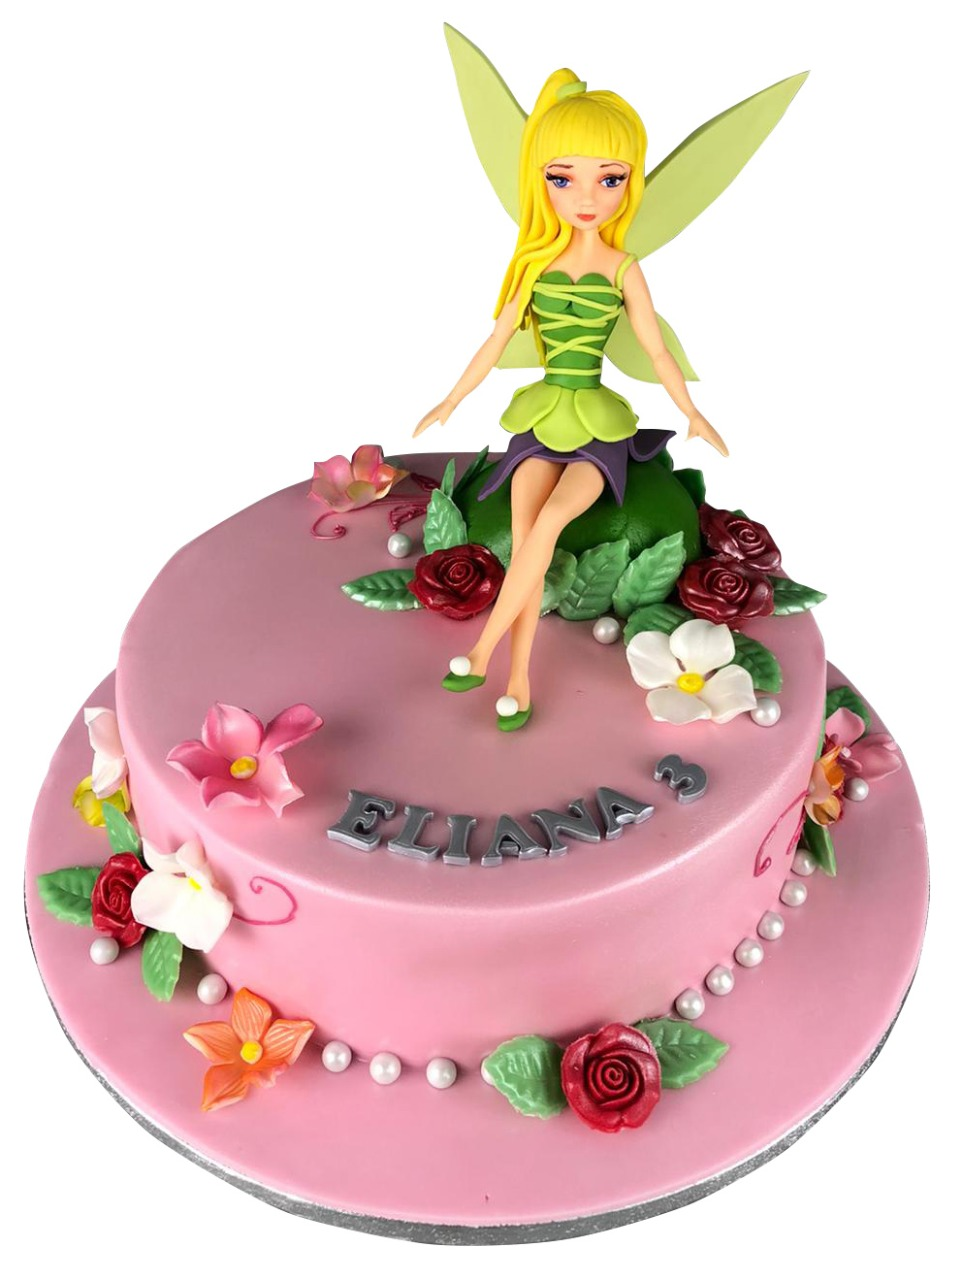 Tinkerbell Birthday Cake For Girls